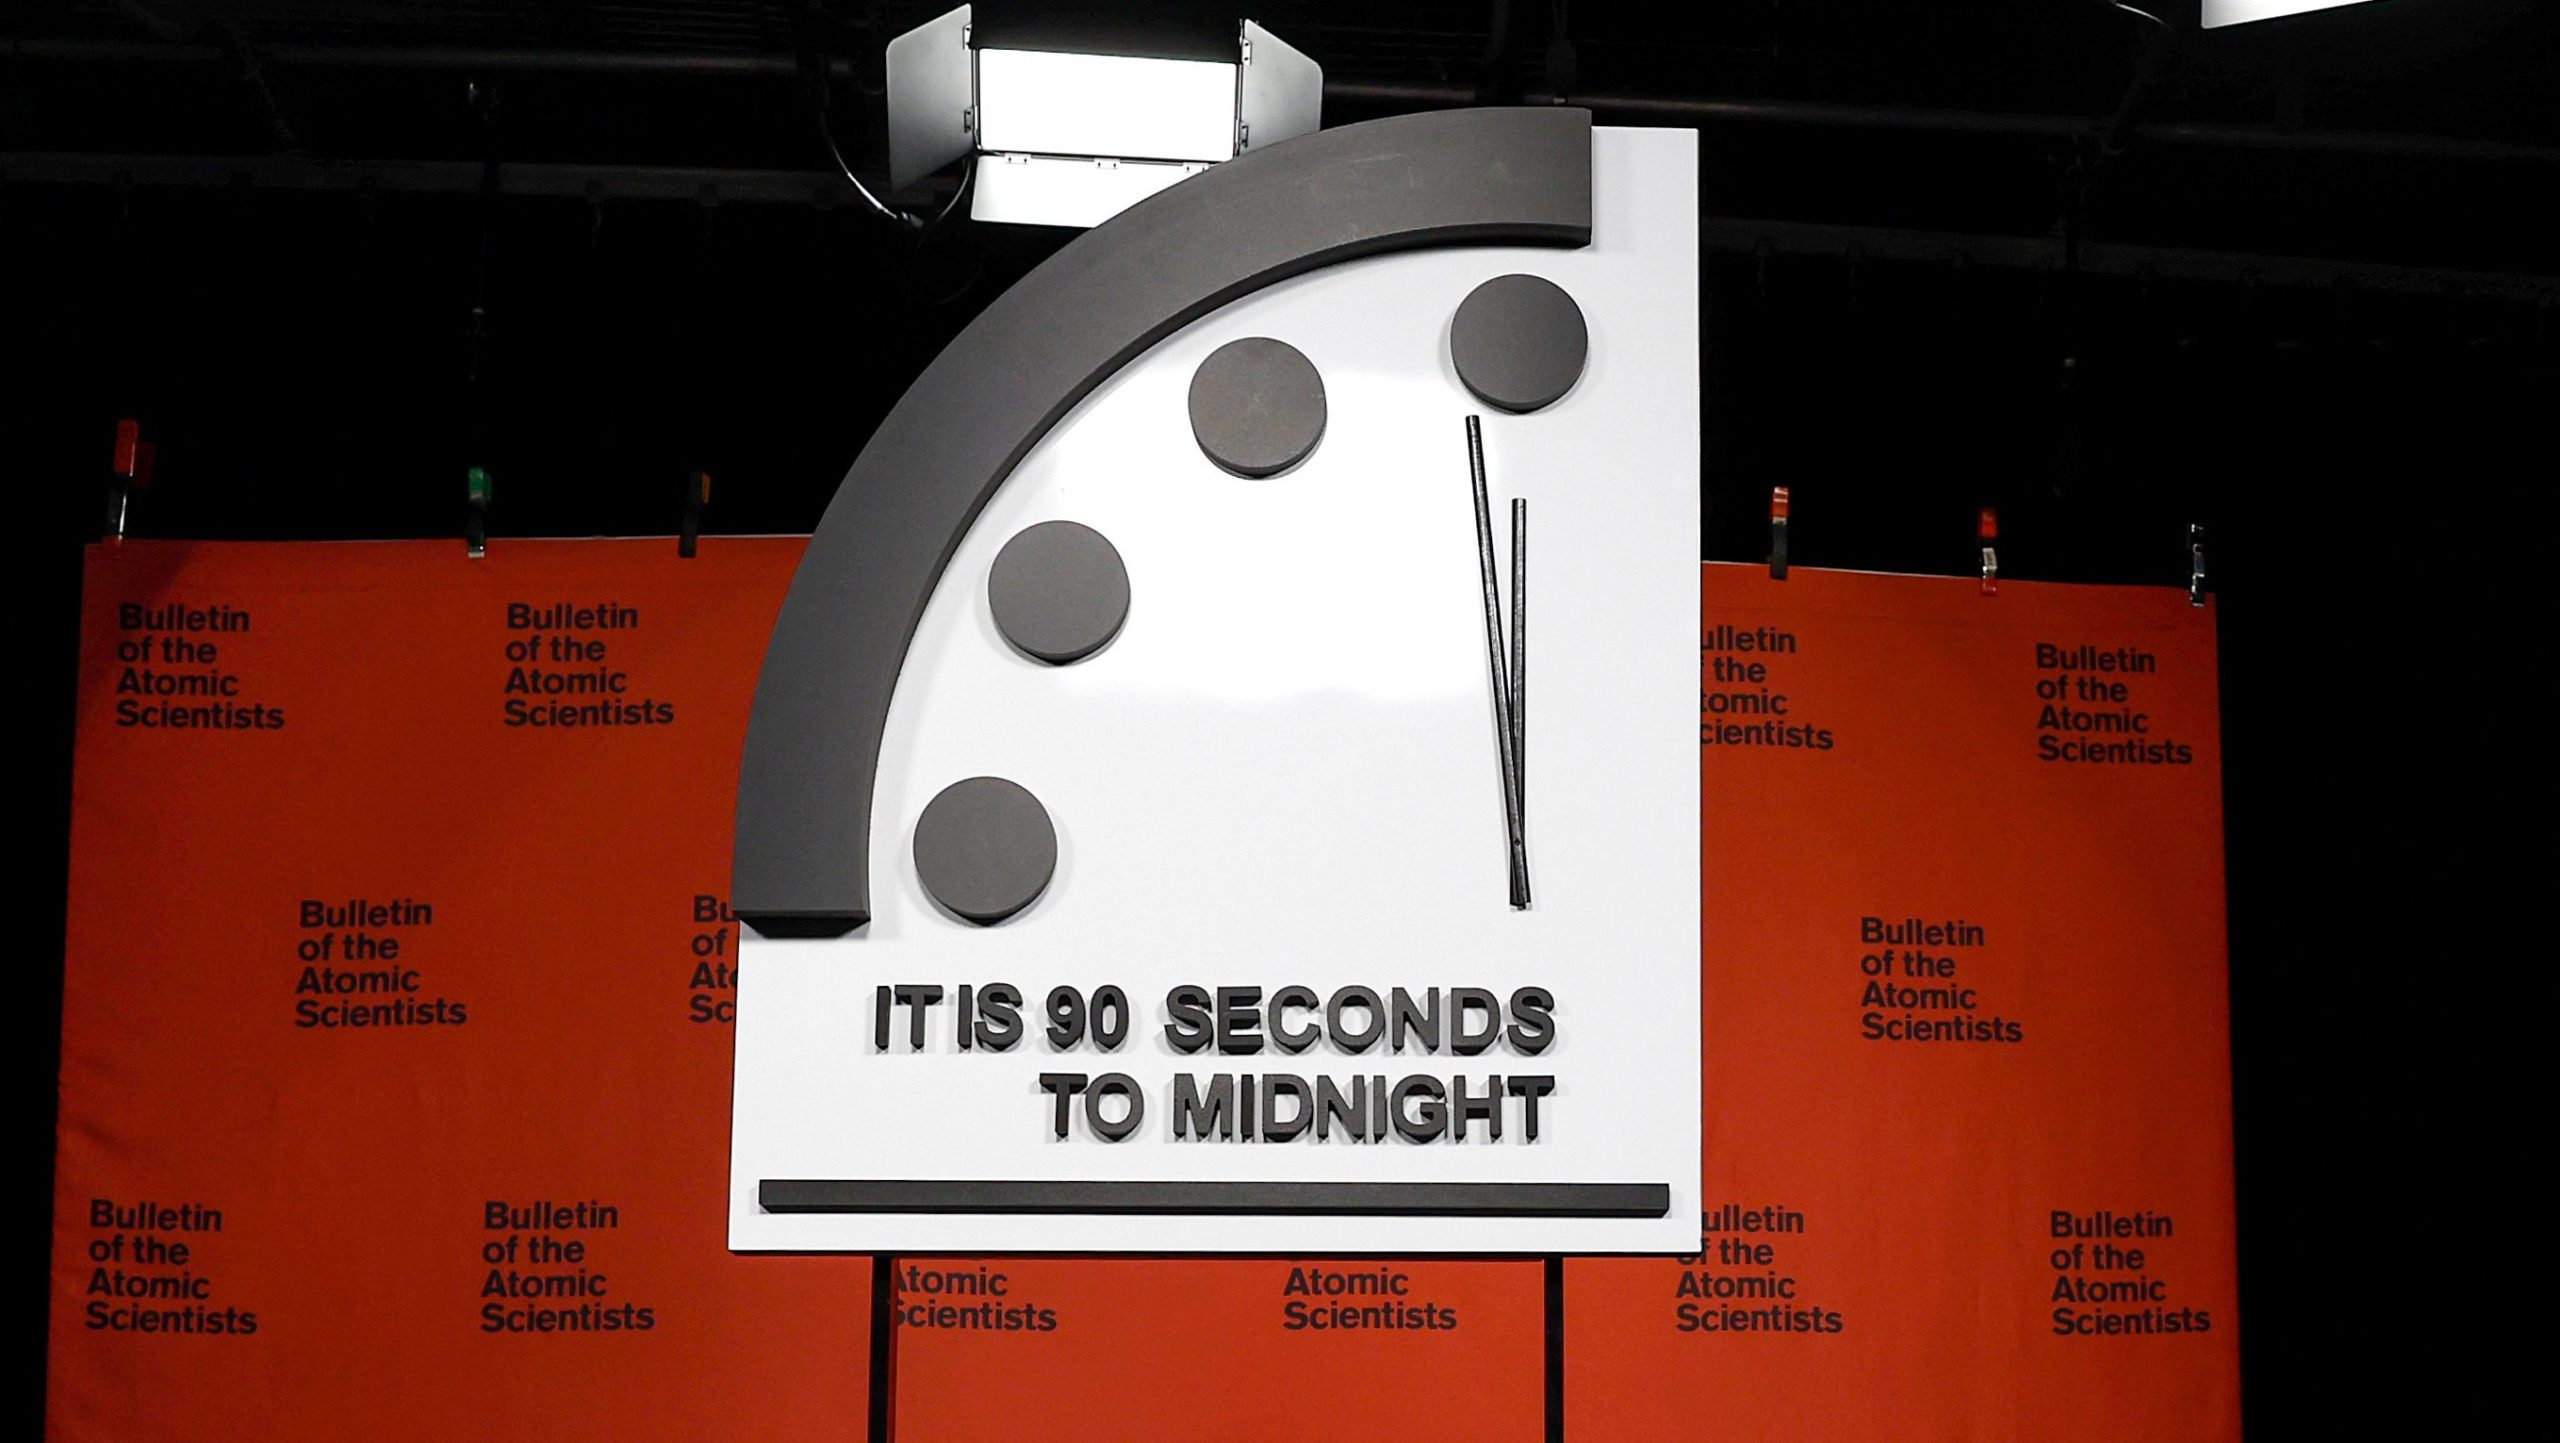 İnsanlığa meydan okumanın mecazi ölçüsü olan Kıyamet Günü Saati, geçen yıl gece yarısından önce 90 saniyeye sıfırlanmıştı. 